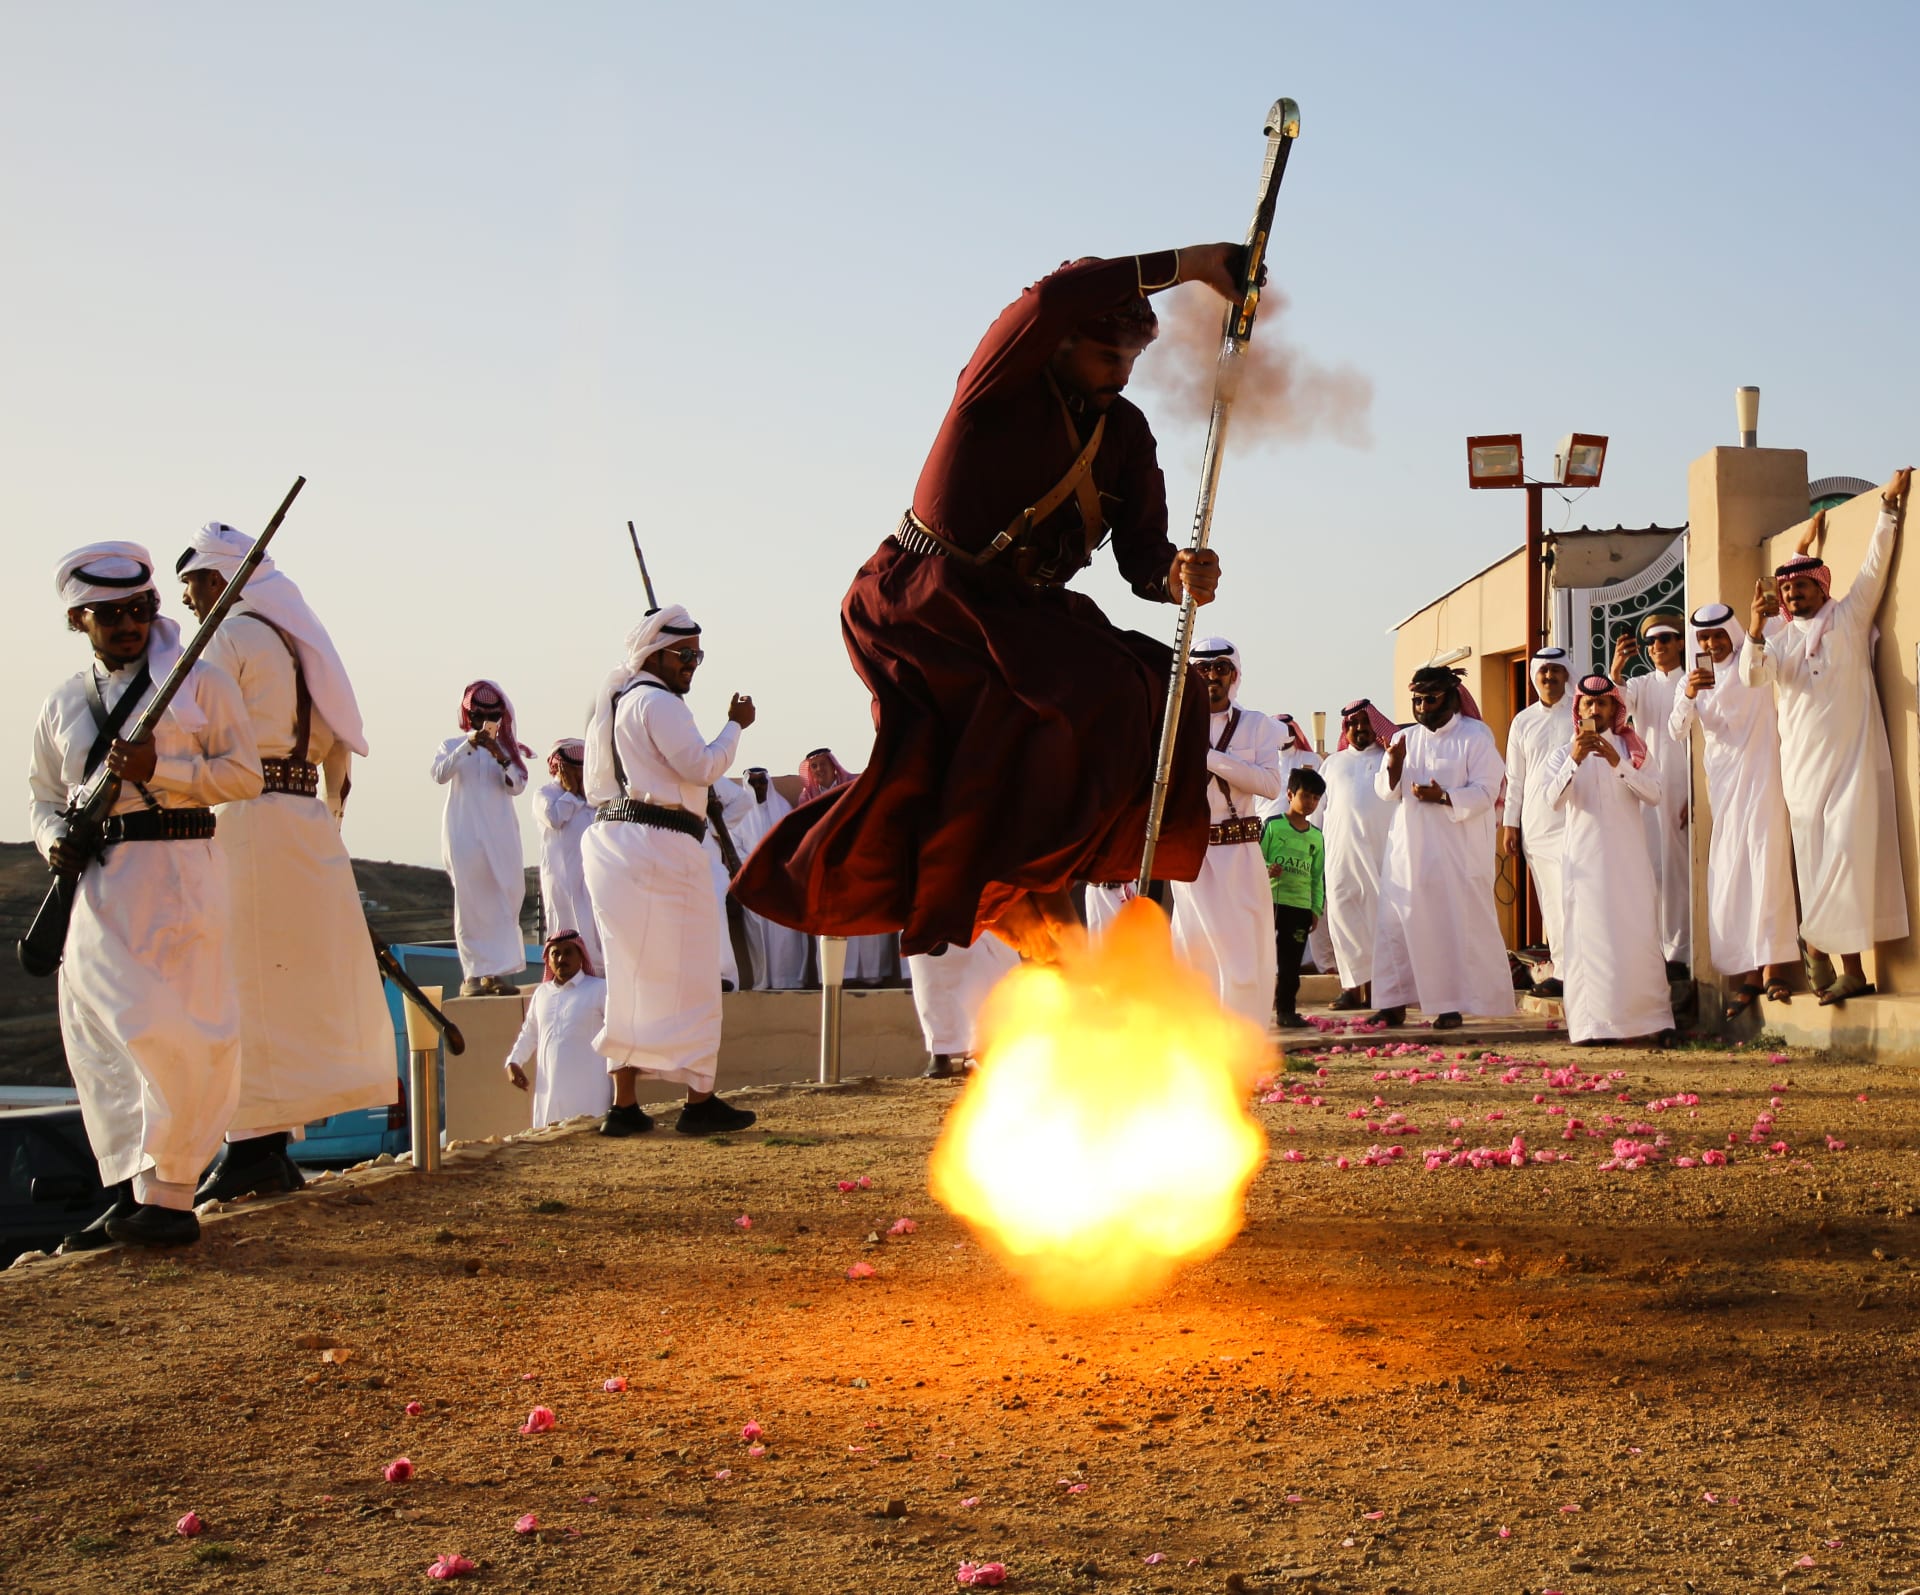 “رقصة النار" في السعودية.. مشاهد ديناميكية وساطعة لرقصة مبهرة بين شرارات النيران